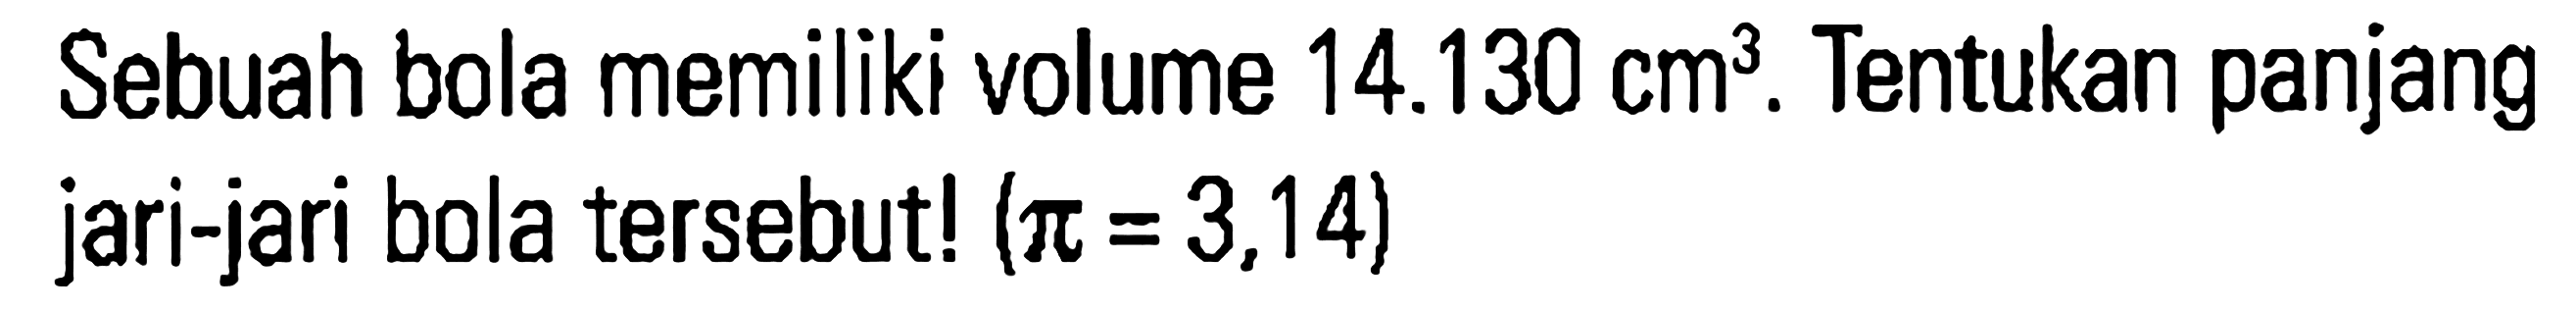 Sebuah bola memiliki volume 14.130 cm^3. Tentukan panjang jari-jari bola tersebut! (pi = 3,14)